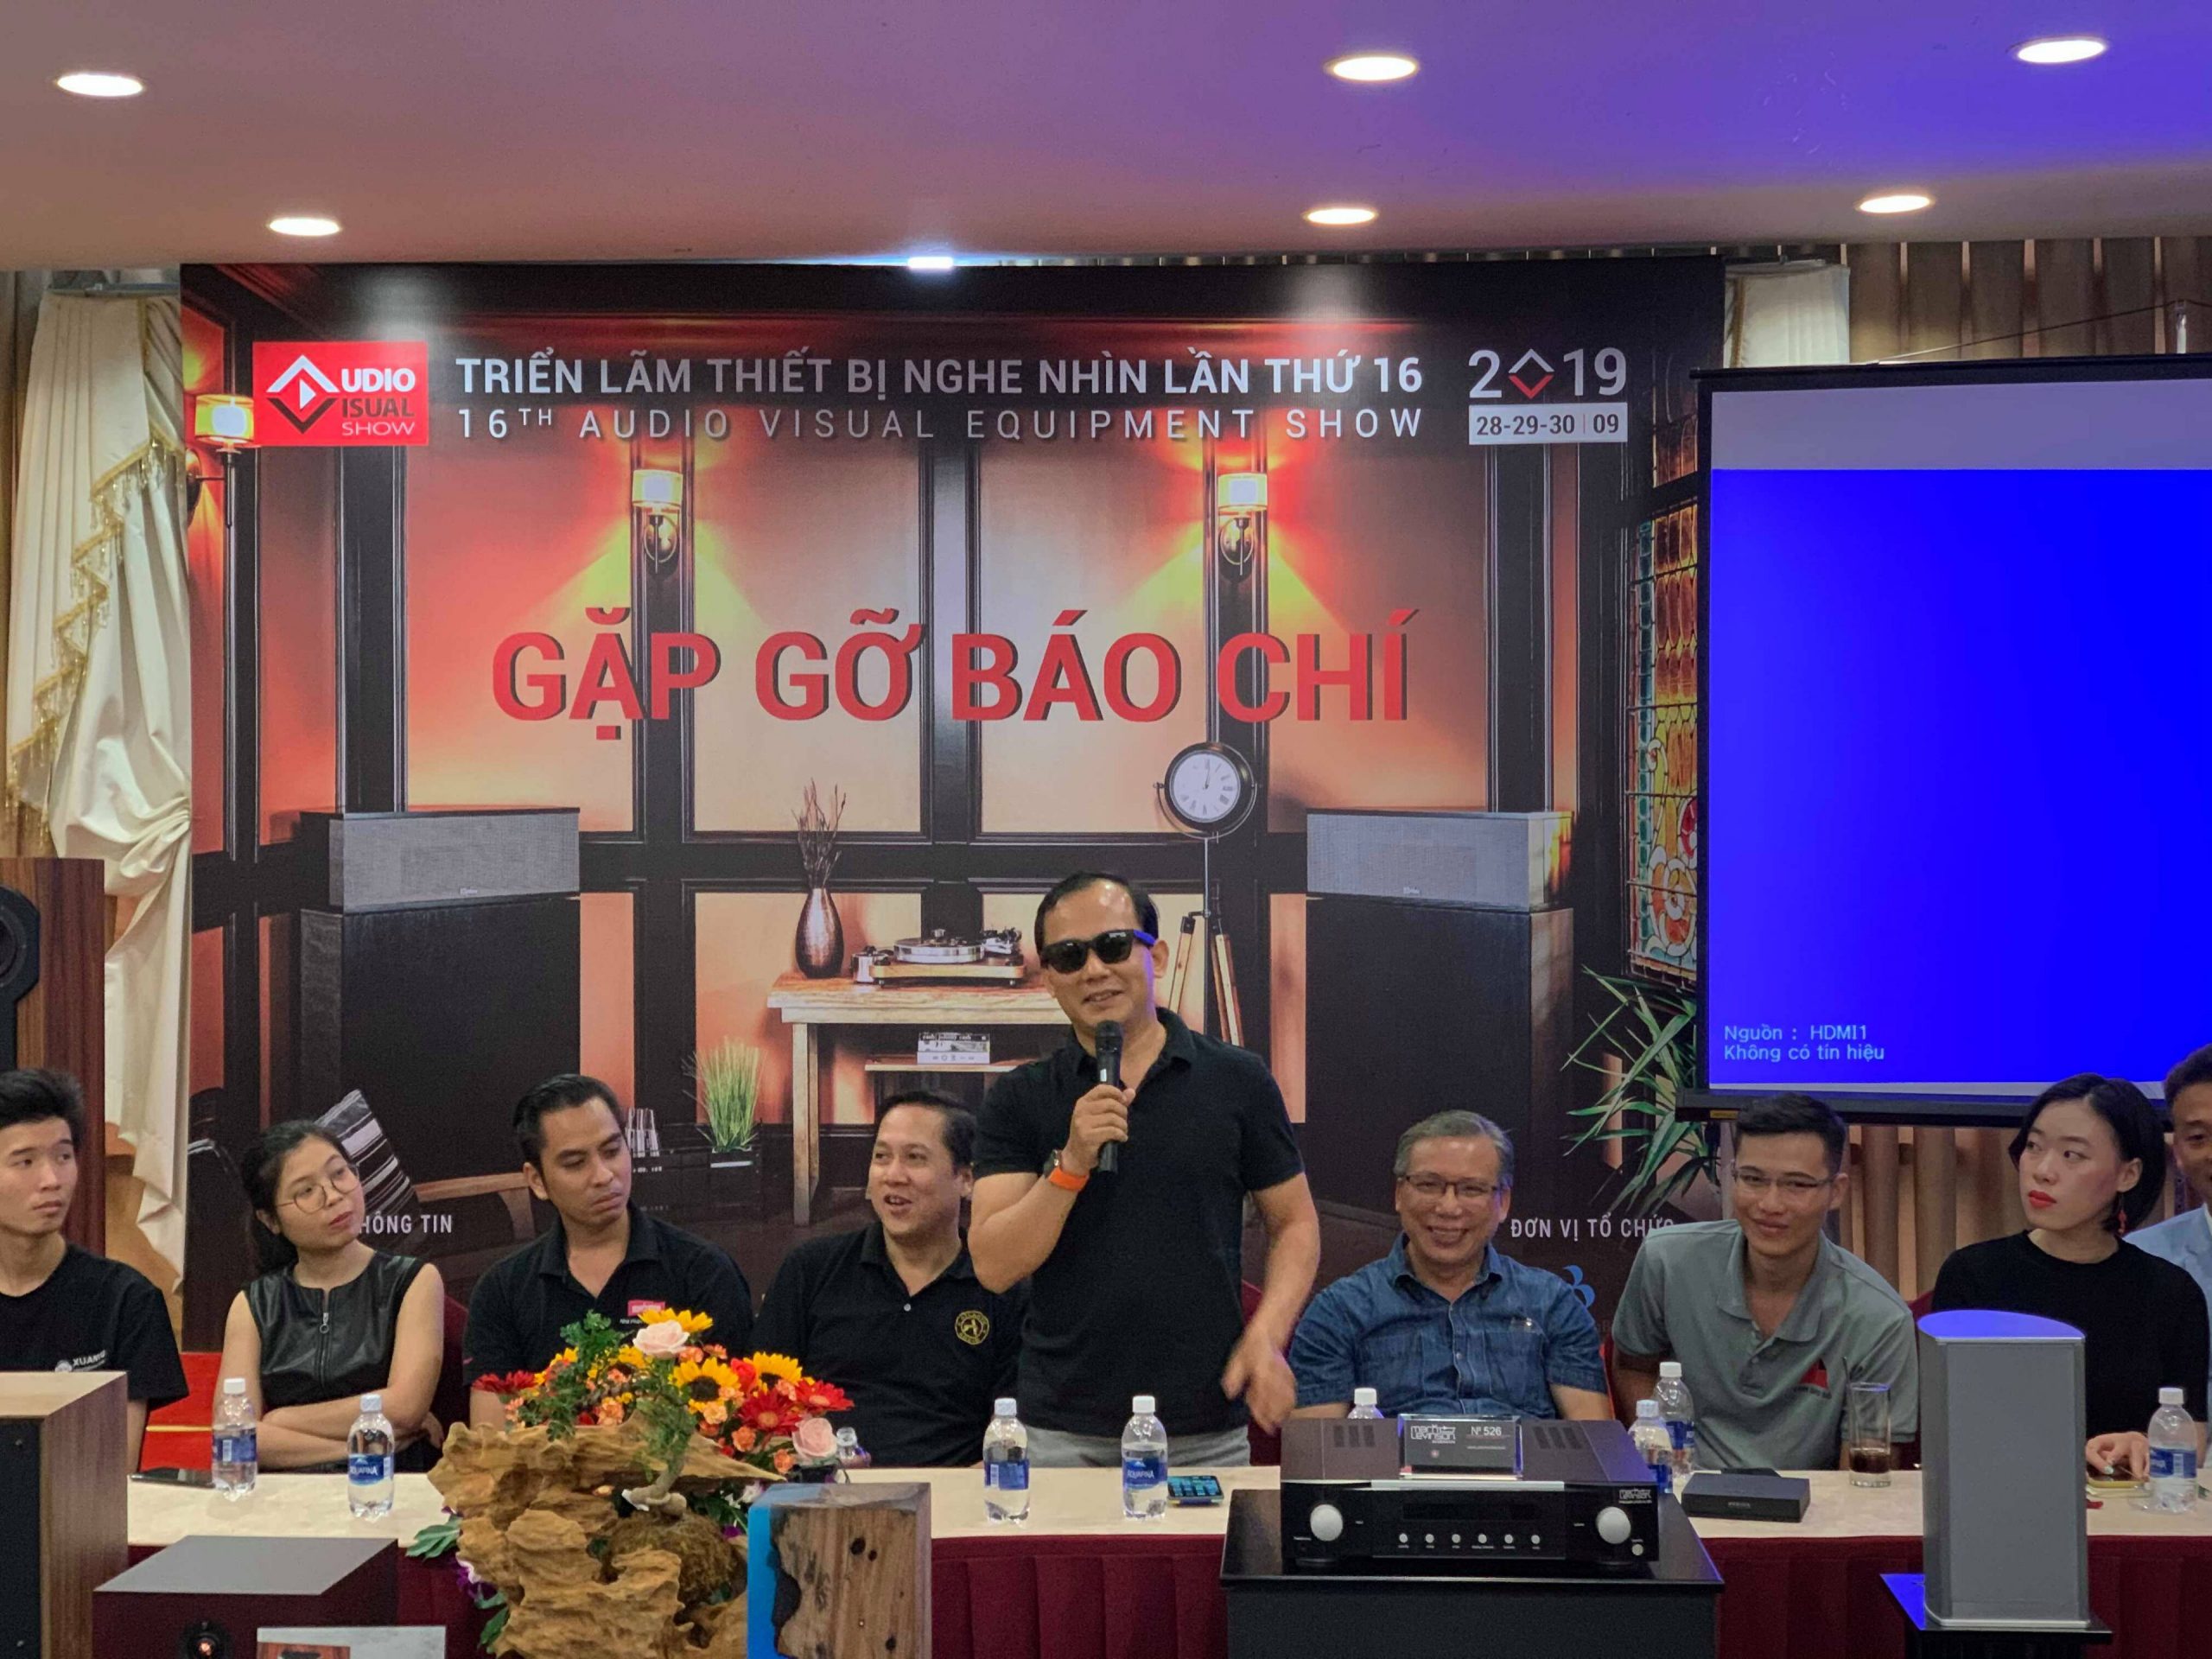 Triển lãm thiết bị nghe nhìn Việt Nam lần thứ 16 – AV Show sẽ diễn ra trong 3 ngày 28-29-30/9/2019